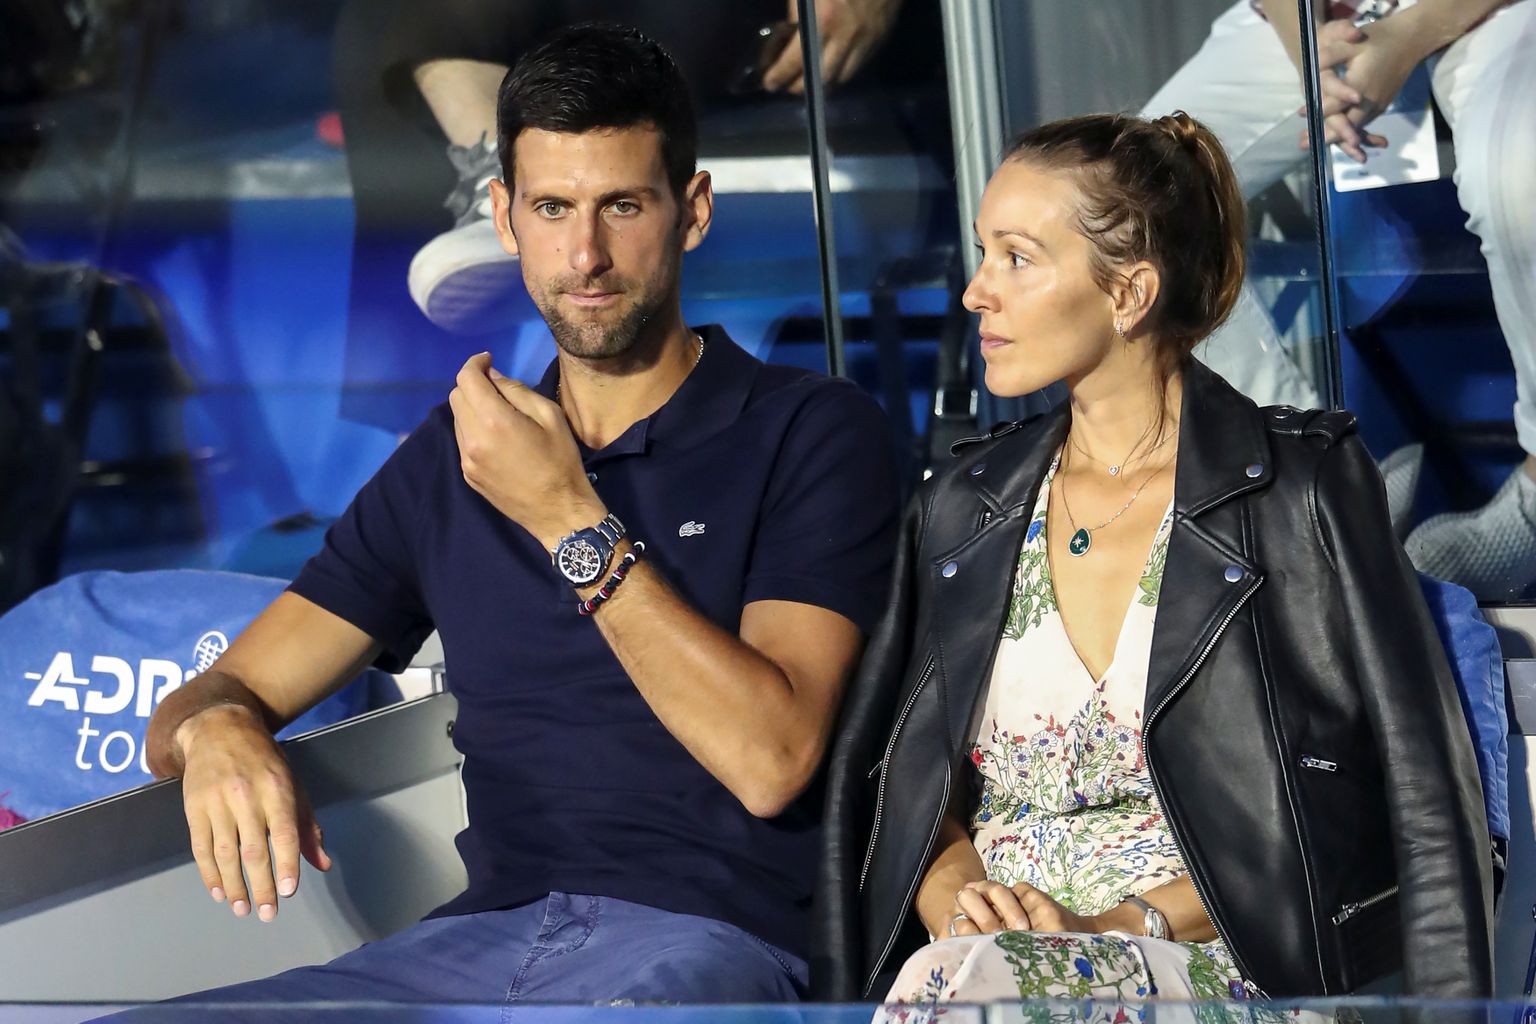 Maailma tennise esireket Novak Djokovic koos abikaasa Jelenaga mullu suvel Aadria tuuril Belgradis.